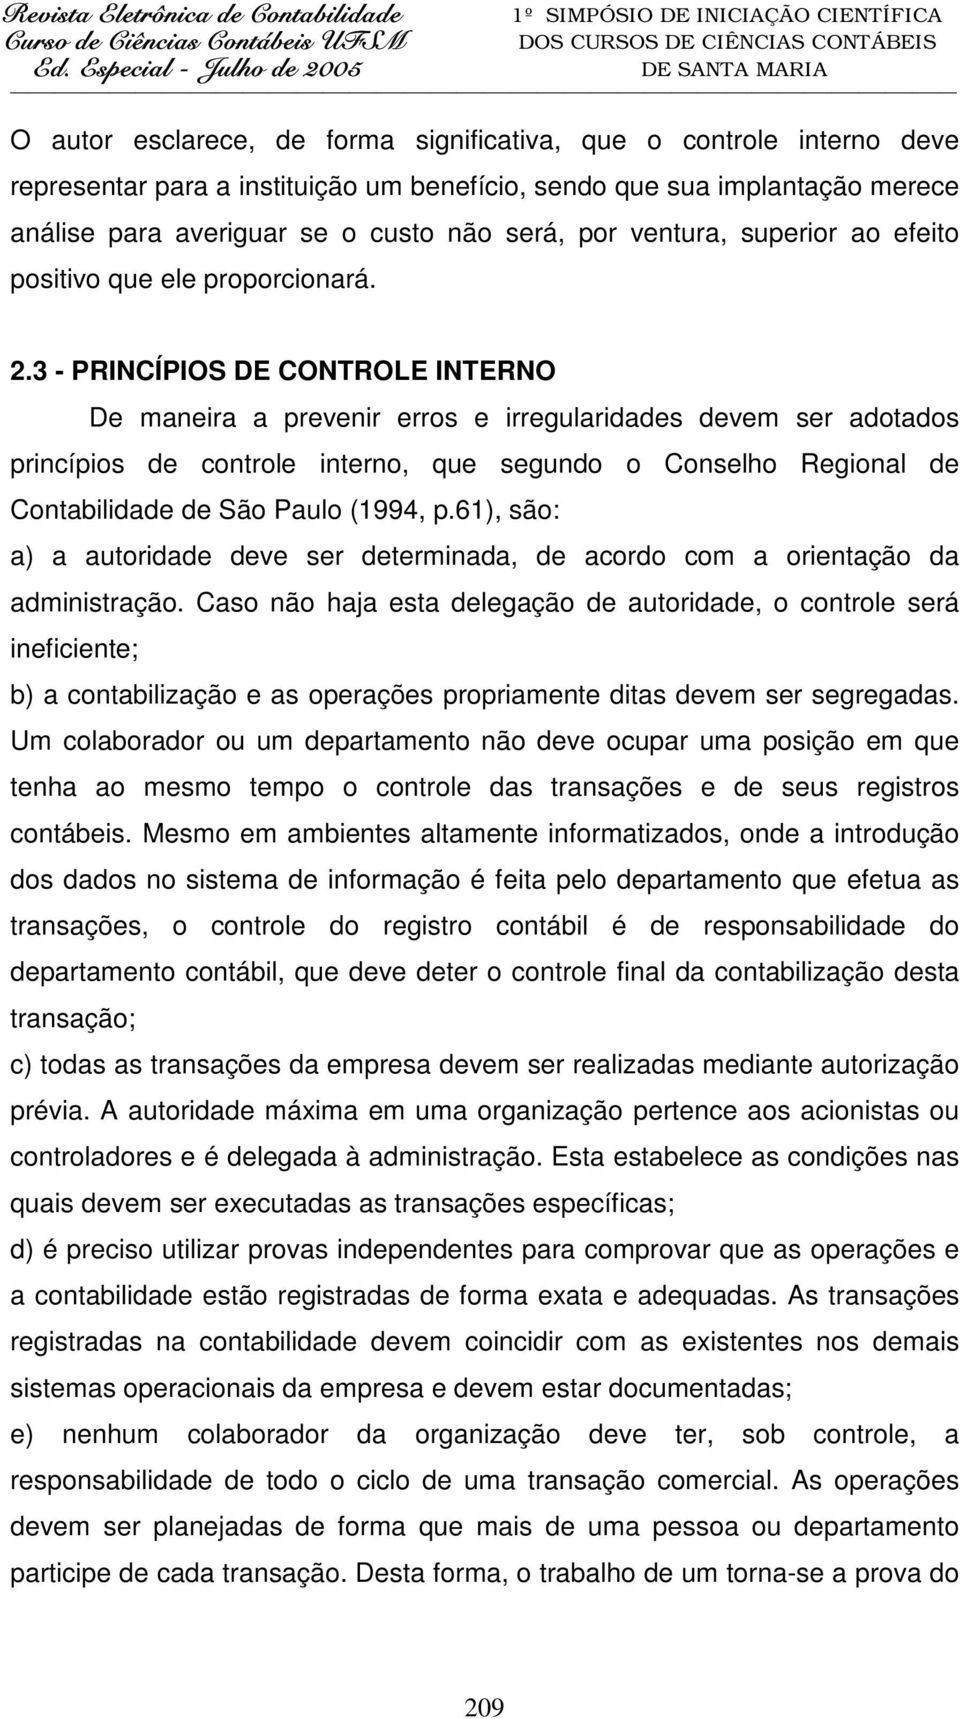 3 - PRINCÍPIOS DE CONTROLE INTERNO De maneira a prevenir erros e irregularidades devem ser adotados princípios de controle interno, que segundo o Conselho Regional de Contabilidade de São Paulo